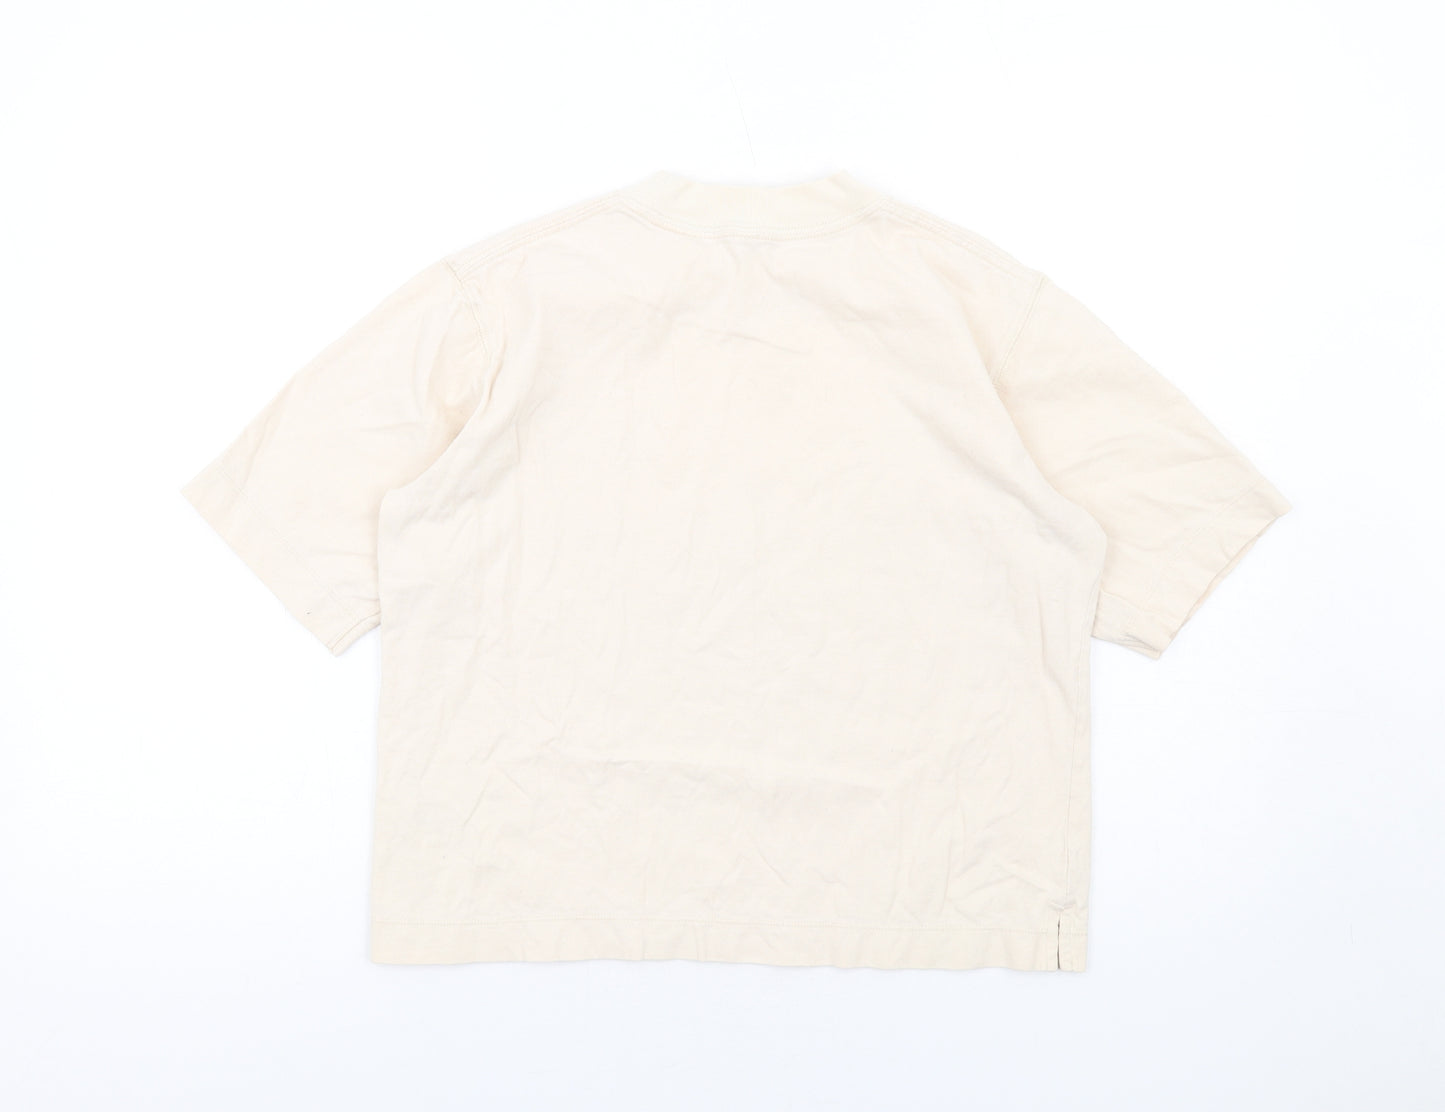 Uniqlo Womens Ivory Cotton Basic T-Shirt Size S Mock Neck